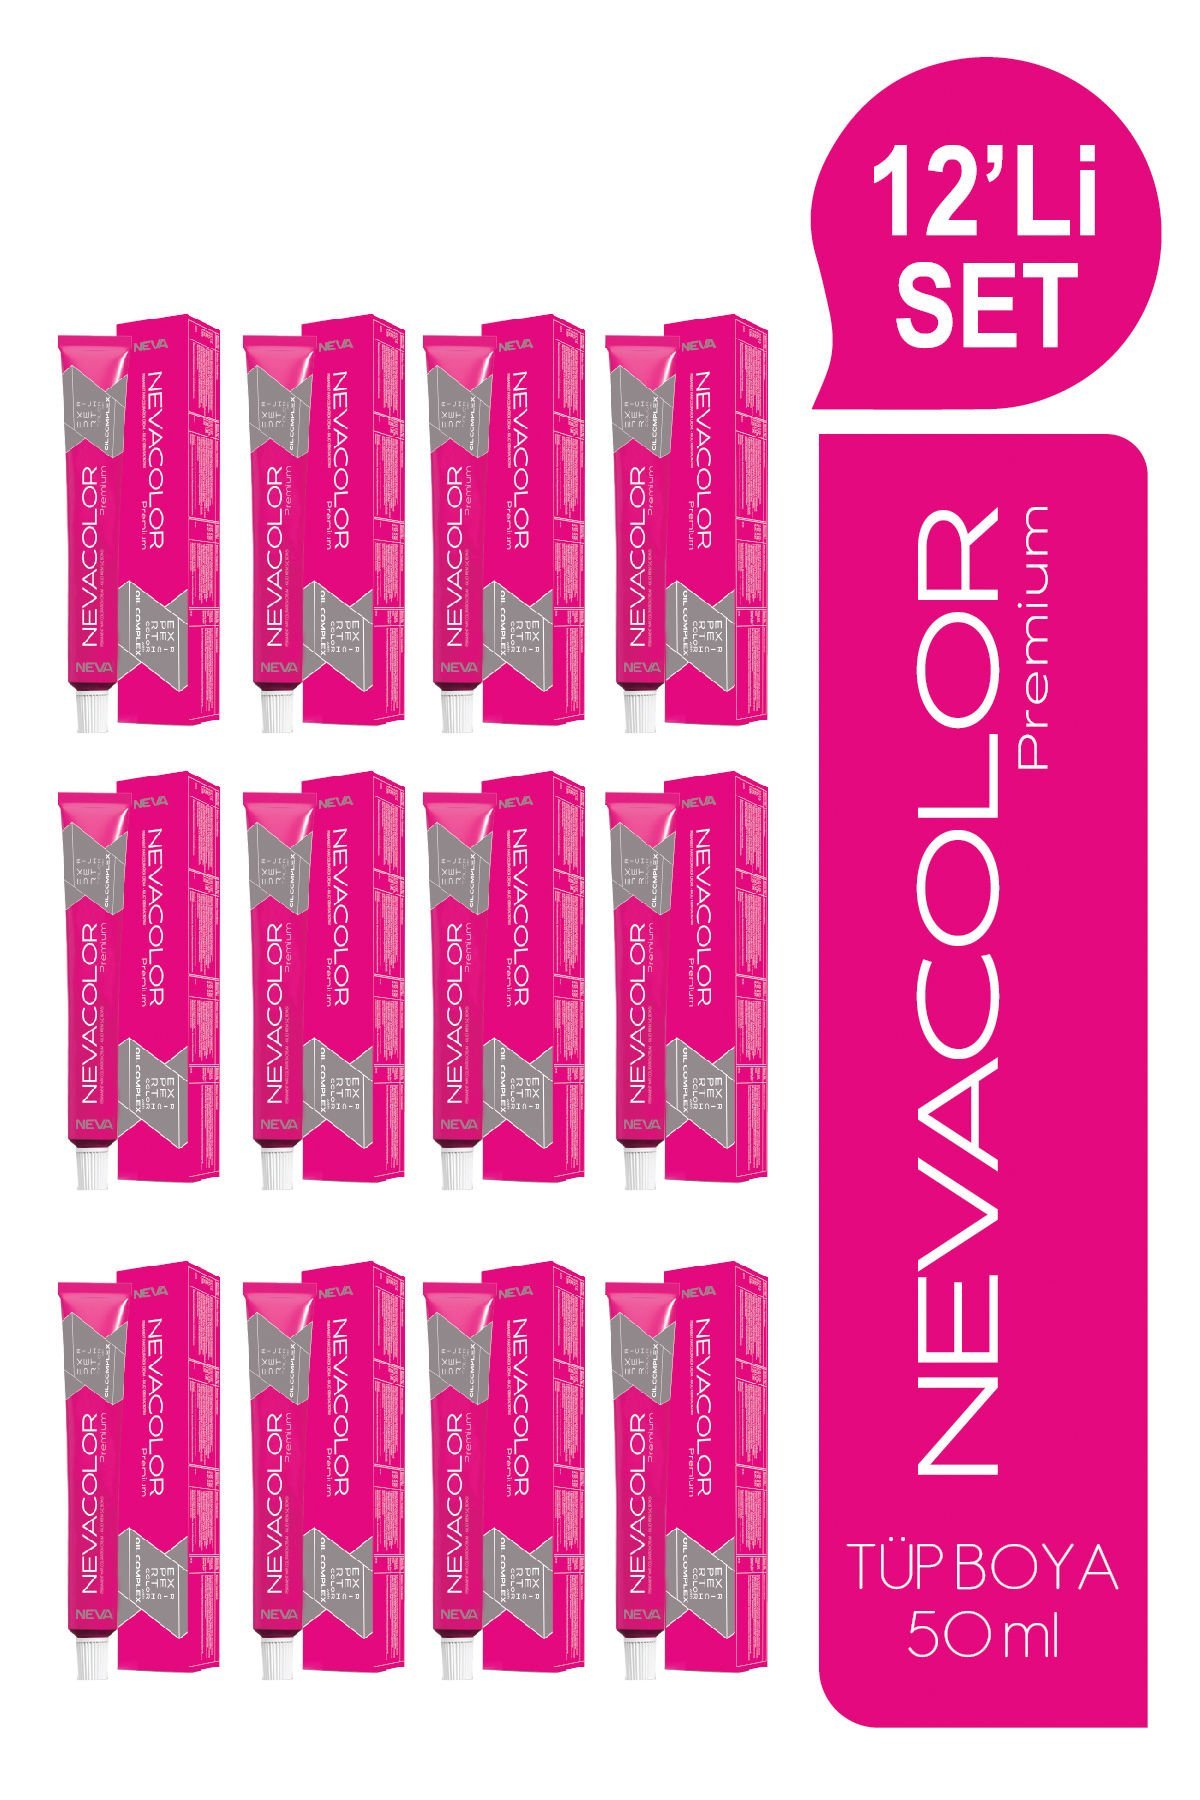 NEVACOLOR Premium 12'Lİ SET  7.44 YOĞUN BAKIR Kalıcı Krem Saç Boyası (50ml x 12 adet)